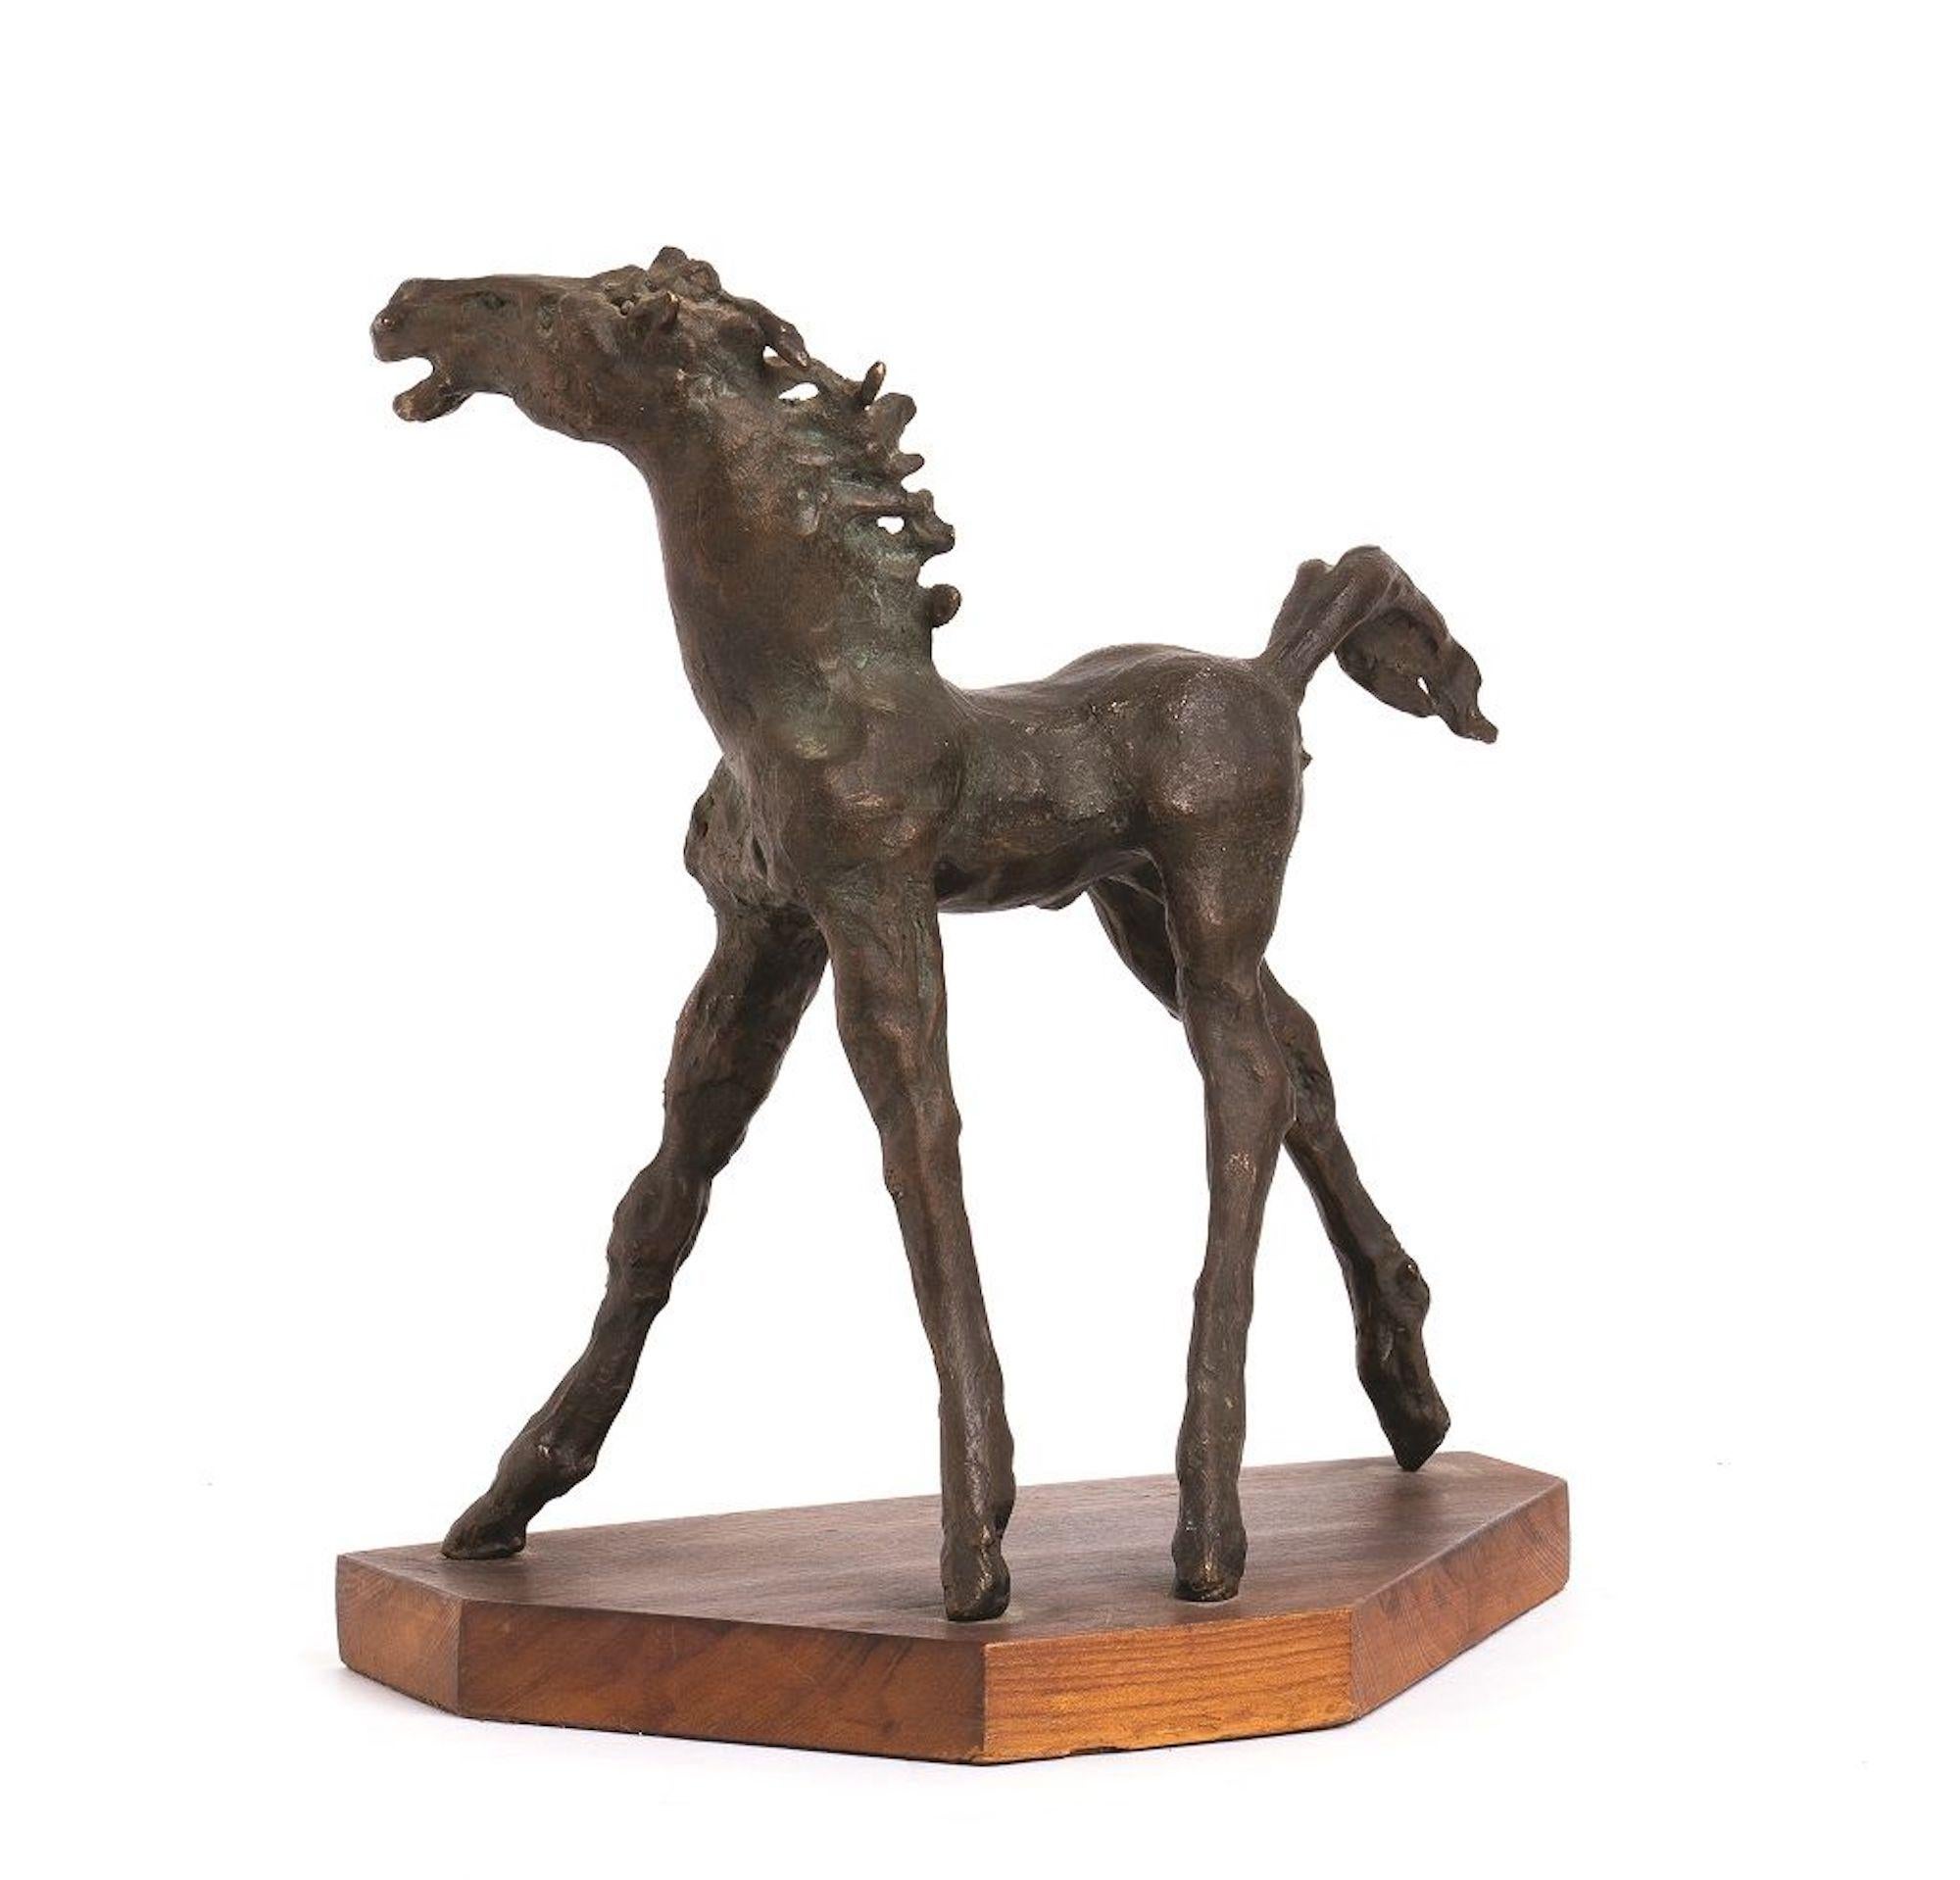 Augusto Murer Figurative Sculpture - Horse  - Original Bronze Sculpture by A. Murer - 1975